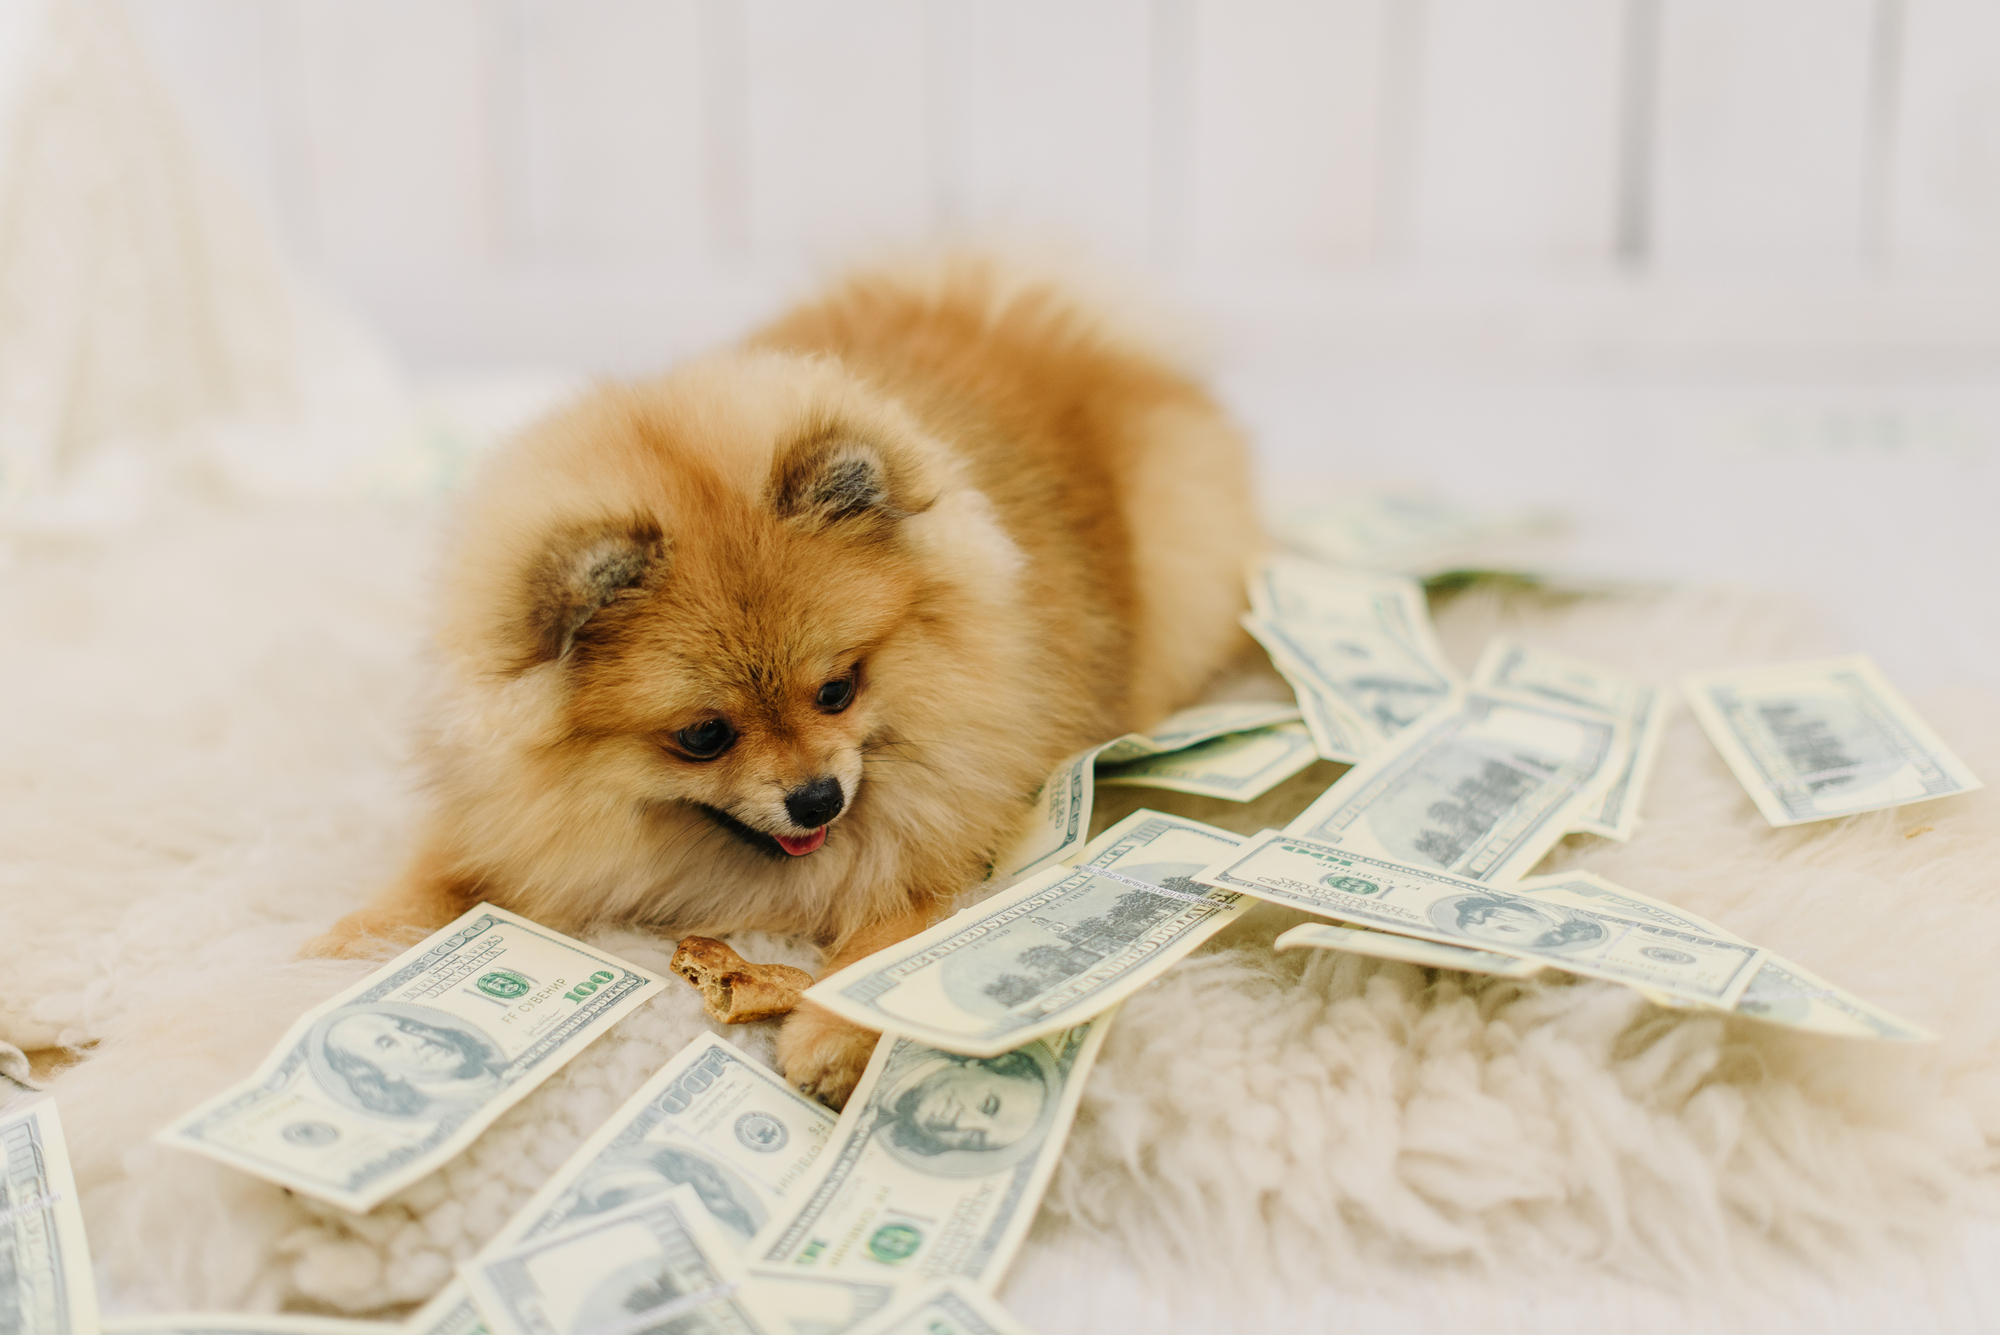 Fluffy little dog lies among dollars on white carpet